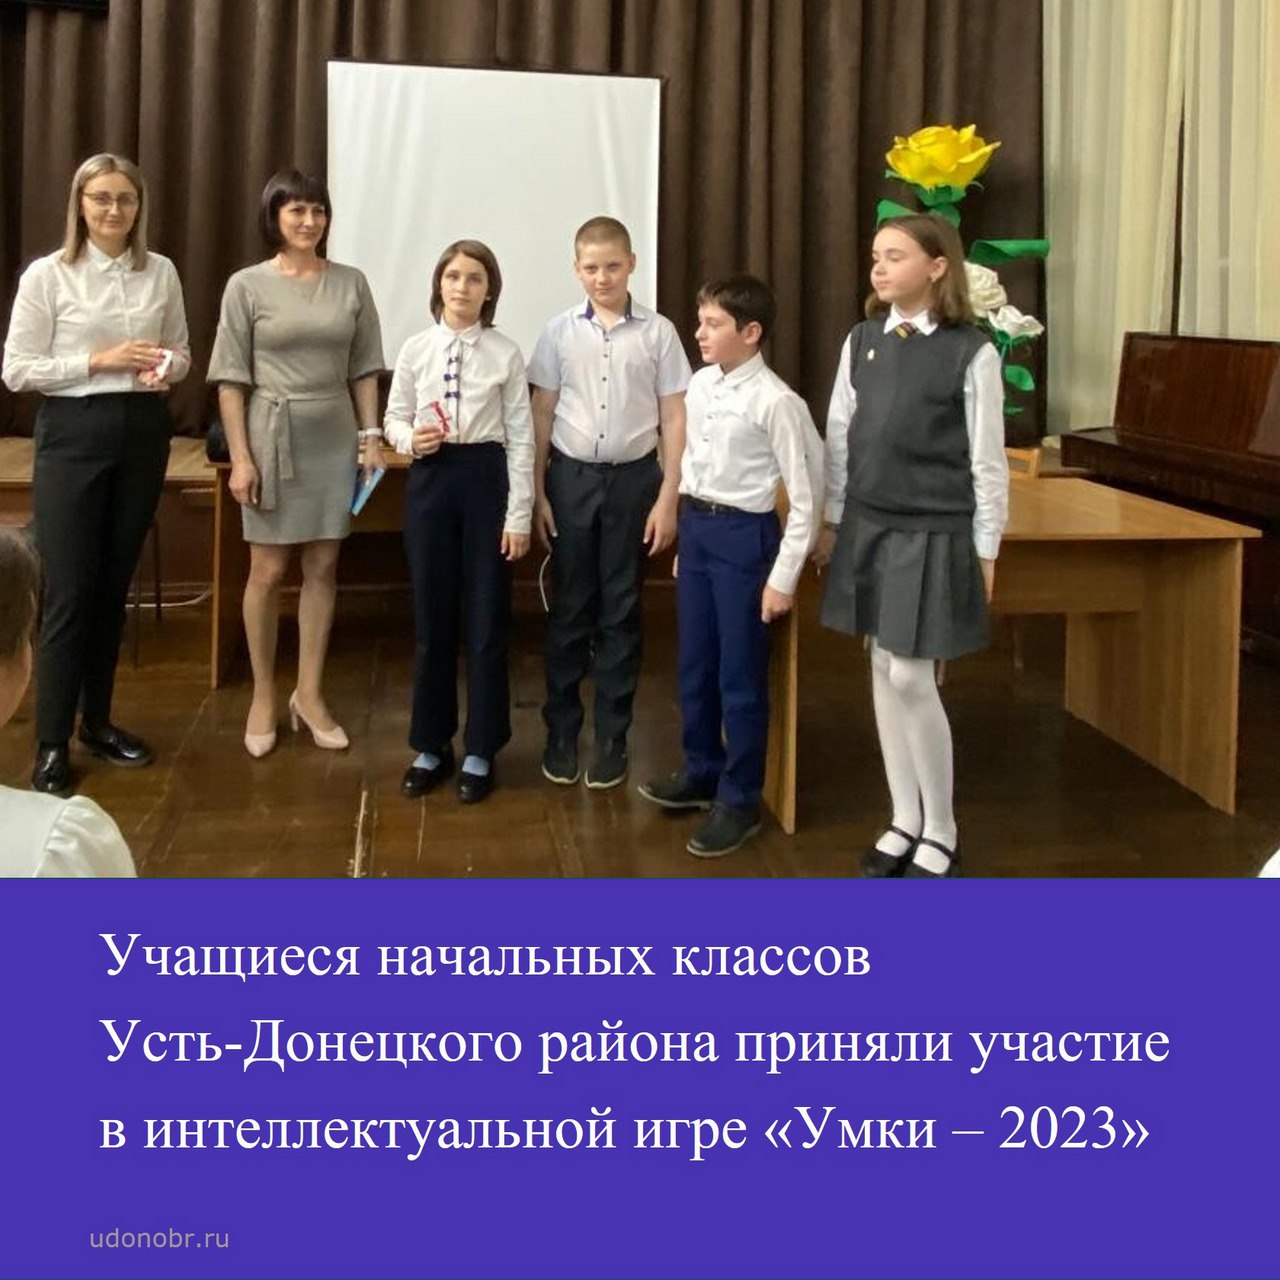 Учащиеся начальных классов Усть-Донецкого района приняли участие в интеллектуальной игре «Умки – 2023»